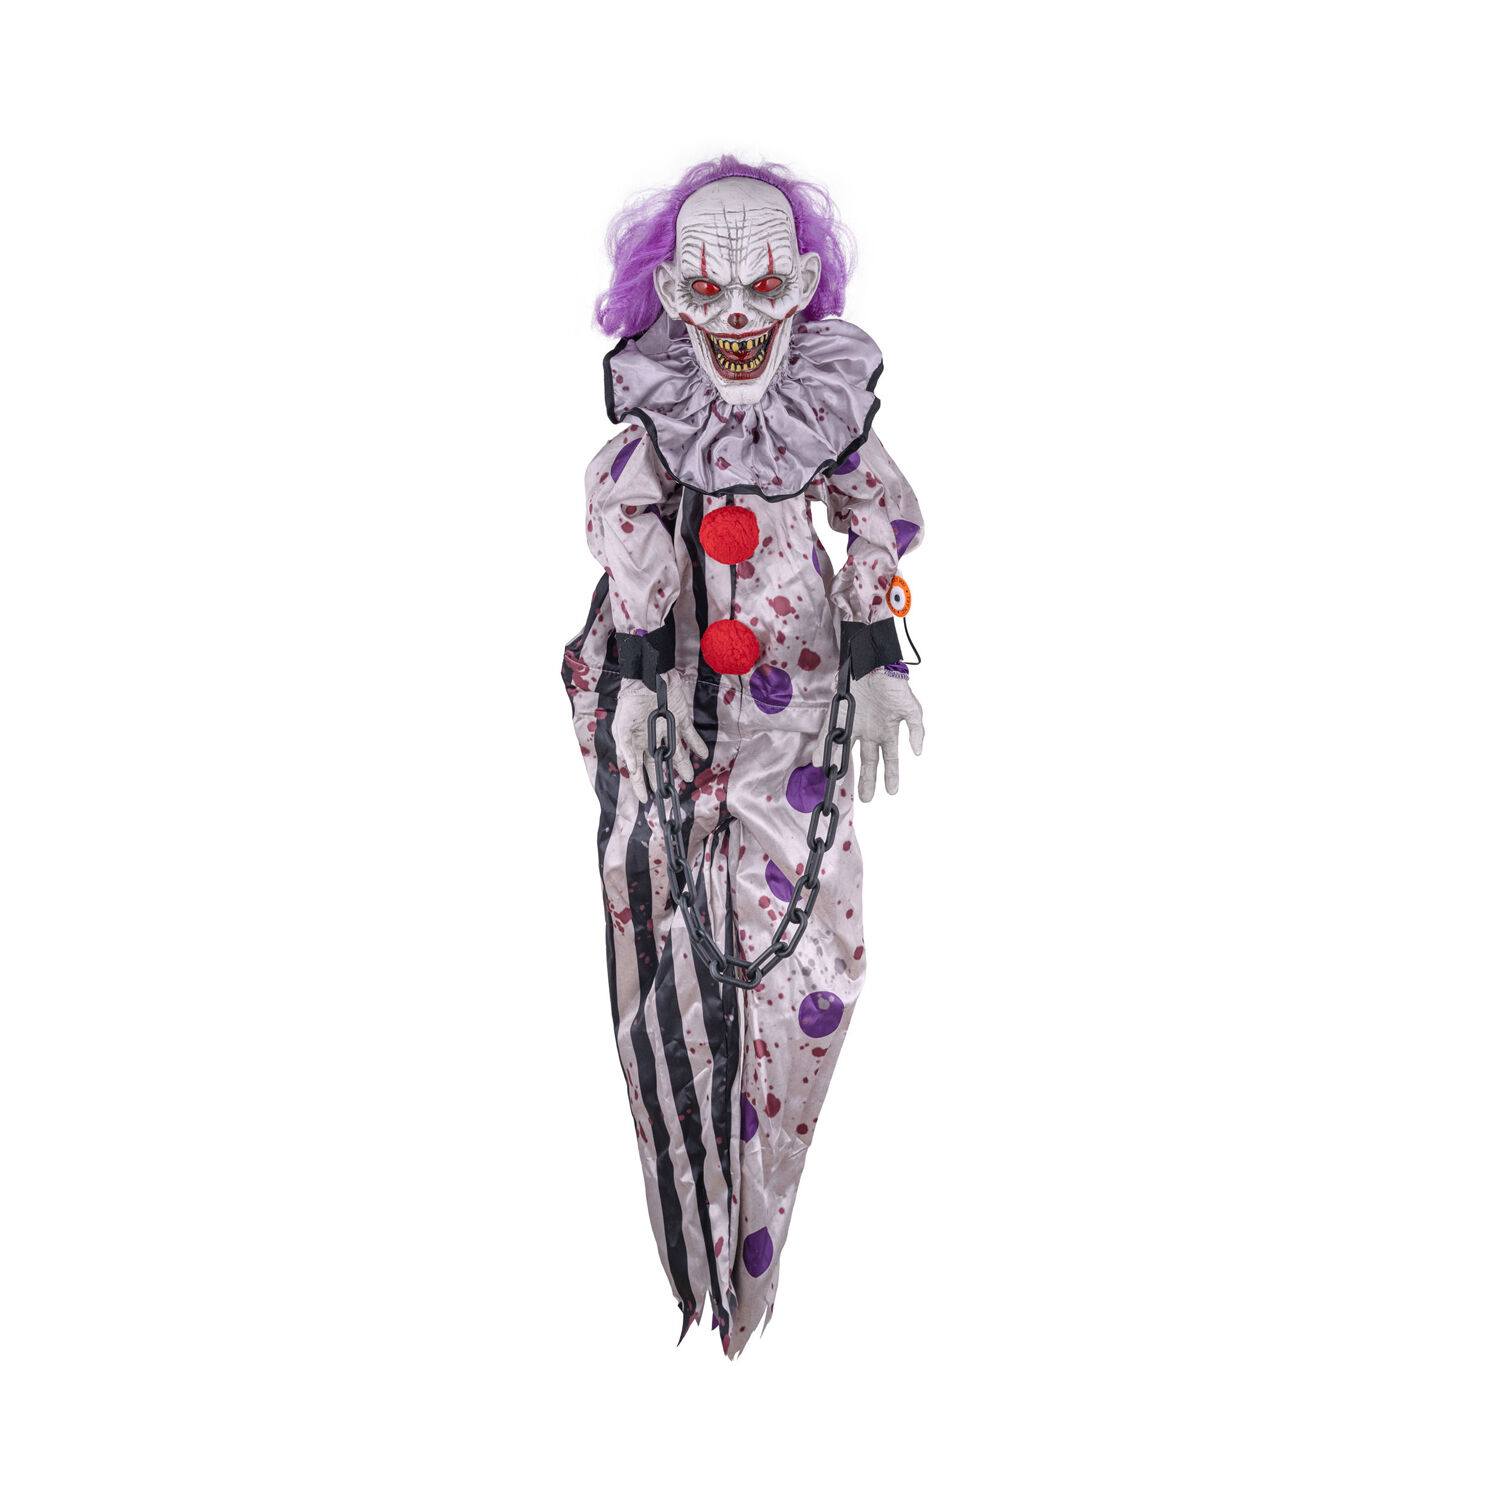 NEU Halloween-Deko-Figur Killer-Clown, mit Licht, Sound und Bewegung, ca. 110cm